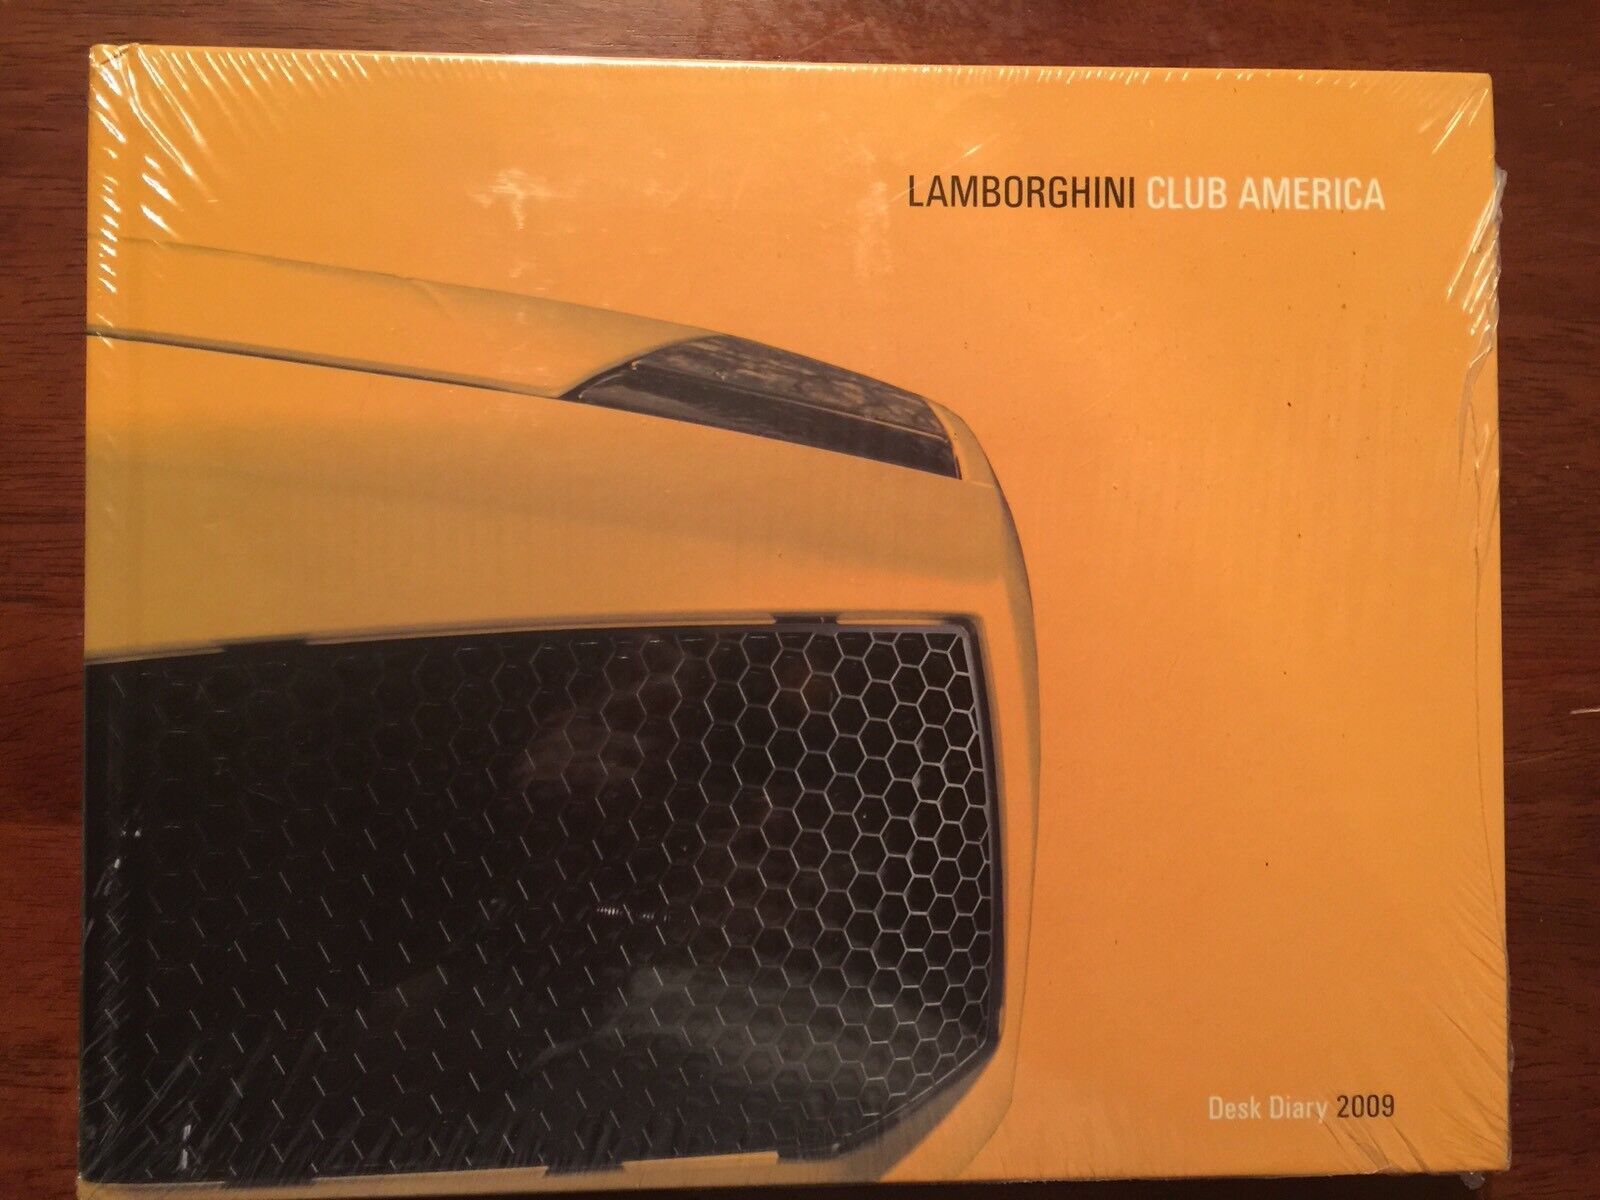 2009 Lamborghini Desk Diary Book - Gallardo Reventon 350GTV 400GT P140 Concept